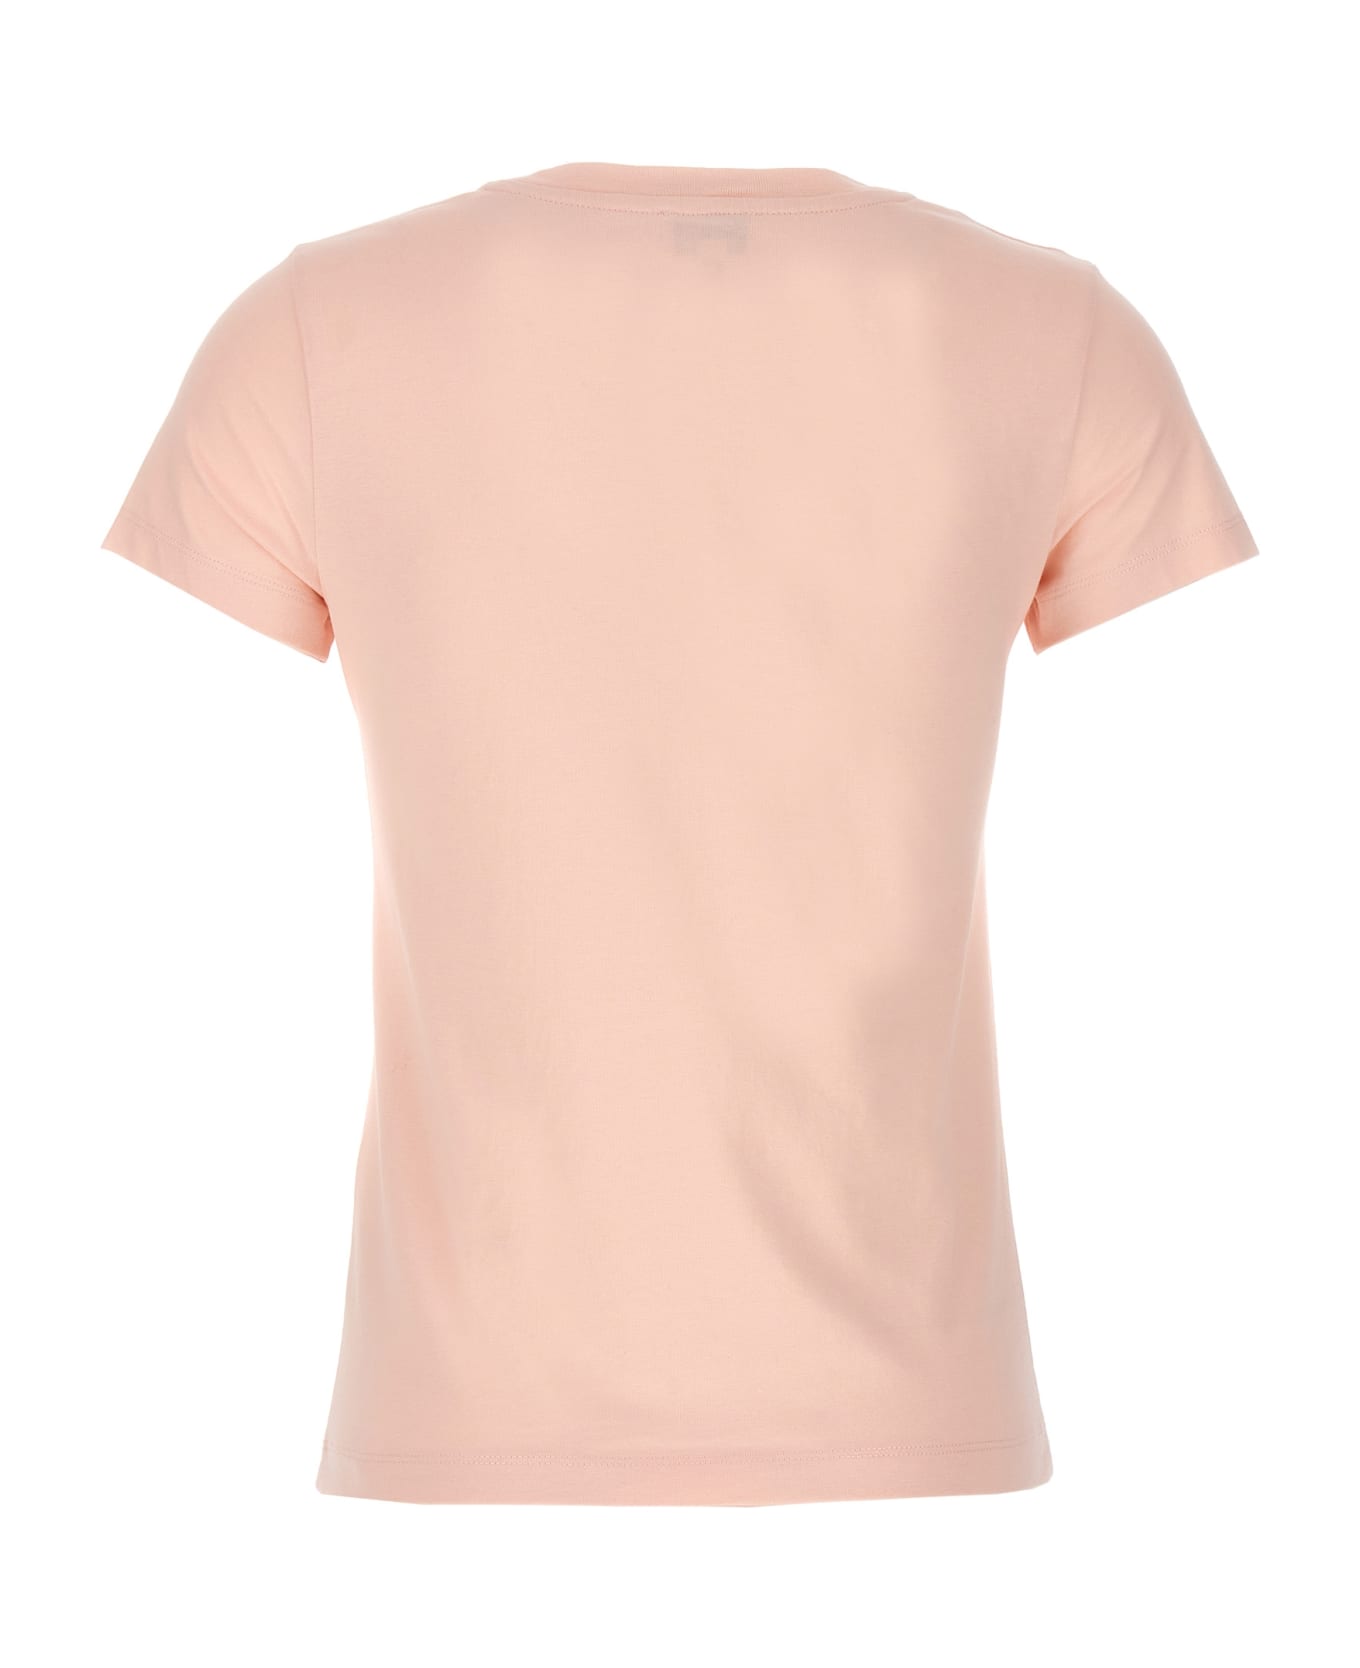 Kenzo Rose T-shirt - Pink Tシャツ